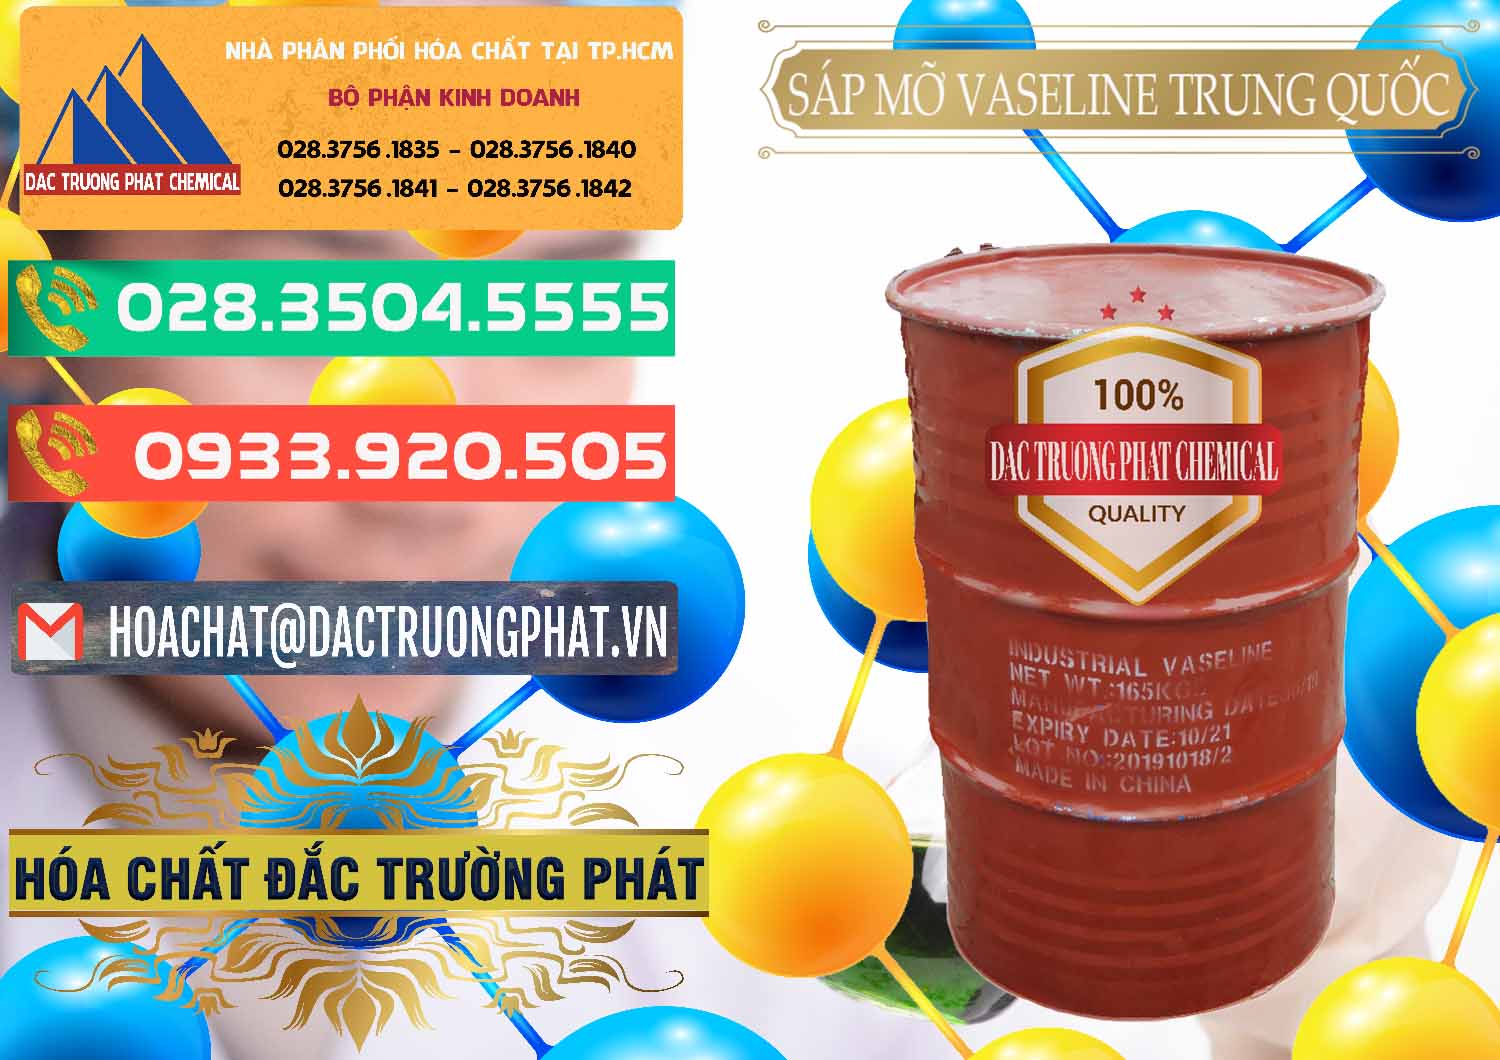 Bán & cung cấp Sáp Mỡ Vaseline Trung Quốc China - 0122 - Cty nhập khẩu và cung cấp hóa chất tại TP.HCM - congtyhoachat.com.vn